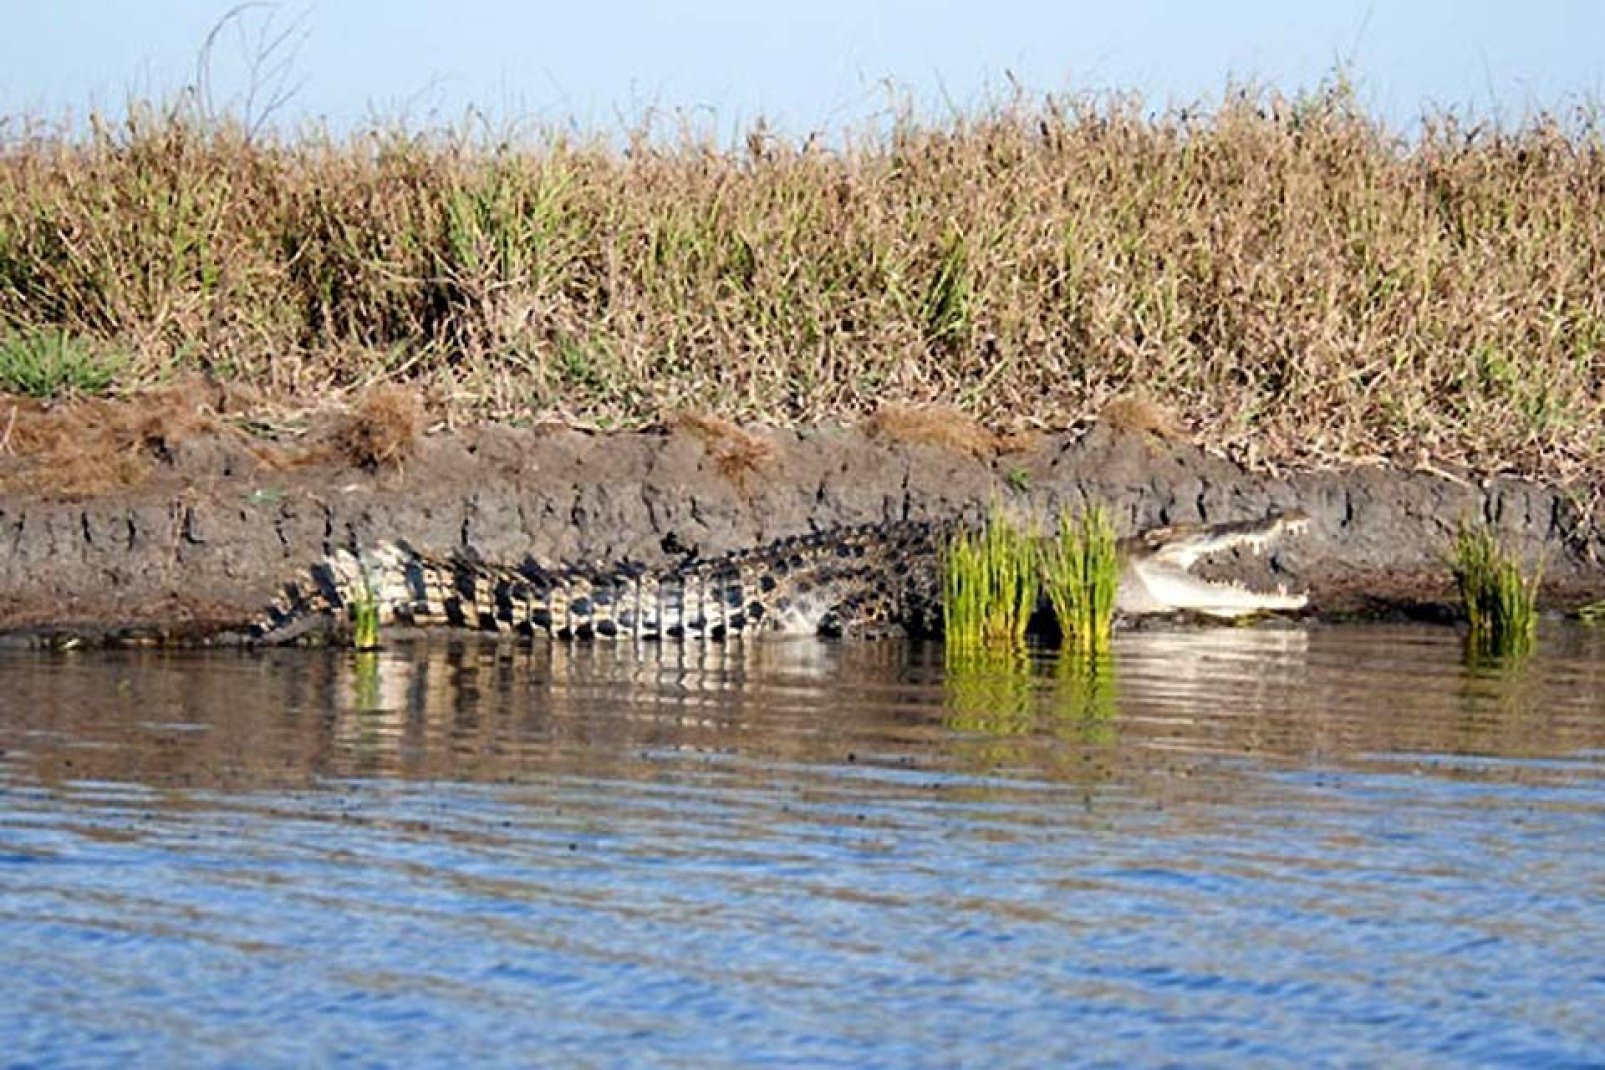 Le crocodile est l'une espèces les plus dangereuses pour l'homme. Il est très présent en Afrique du Sud.